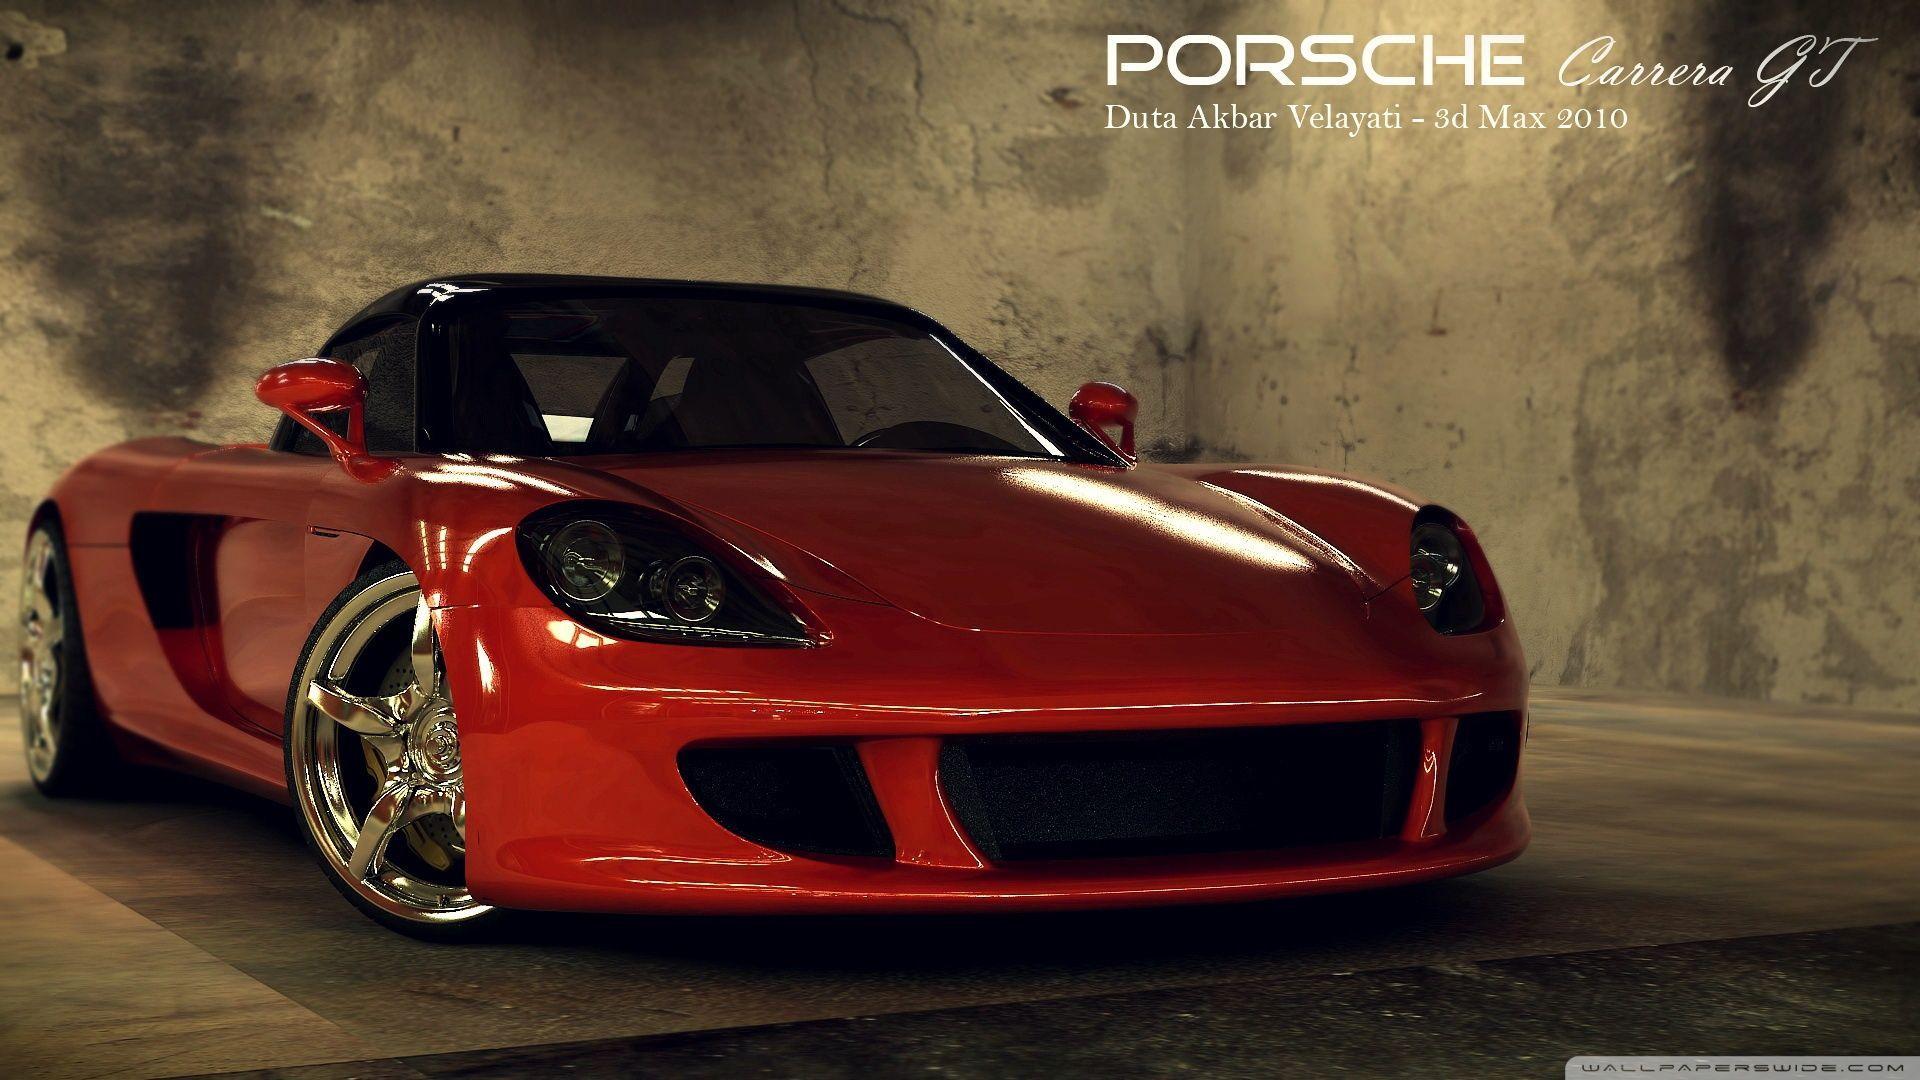 Porsche Carrera GT 3D Max HD desktop wallpaper, High Definition